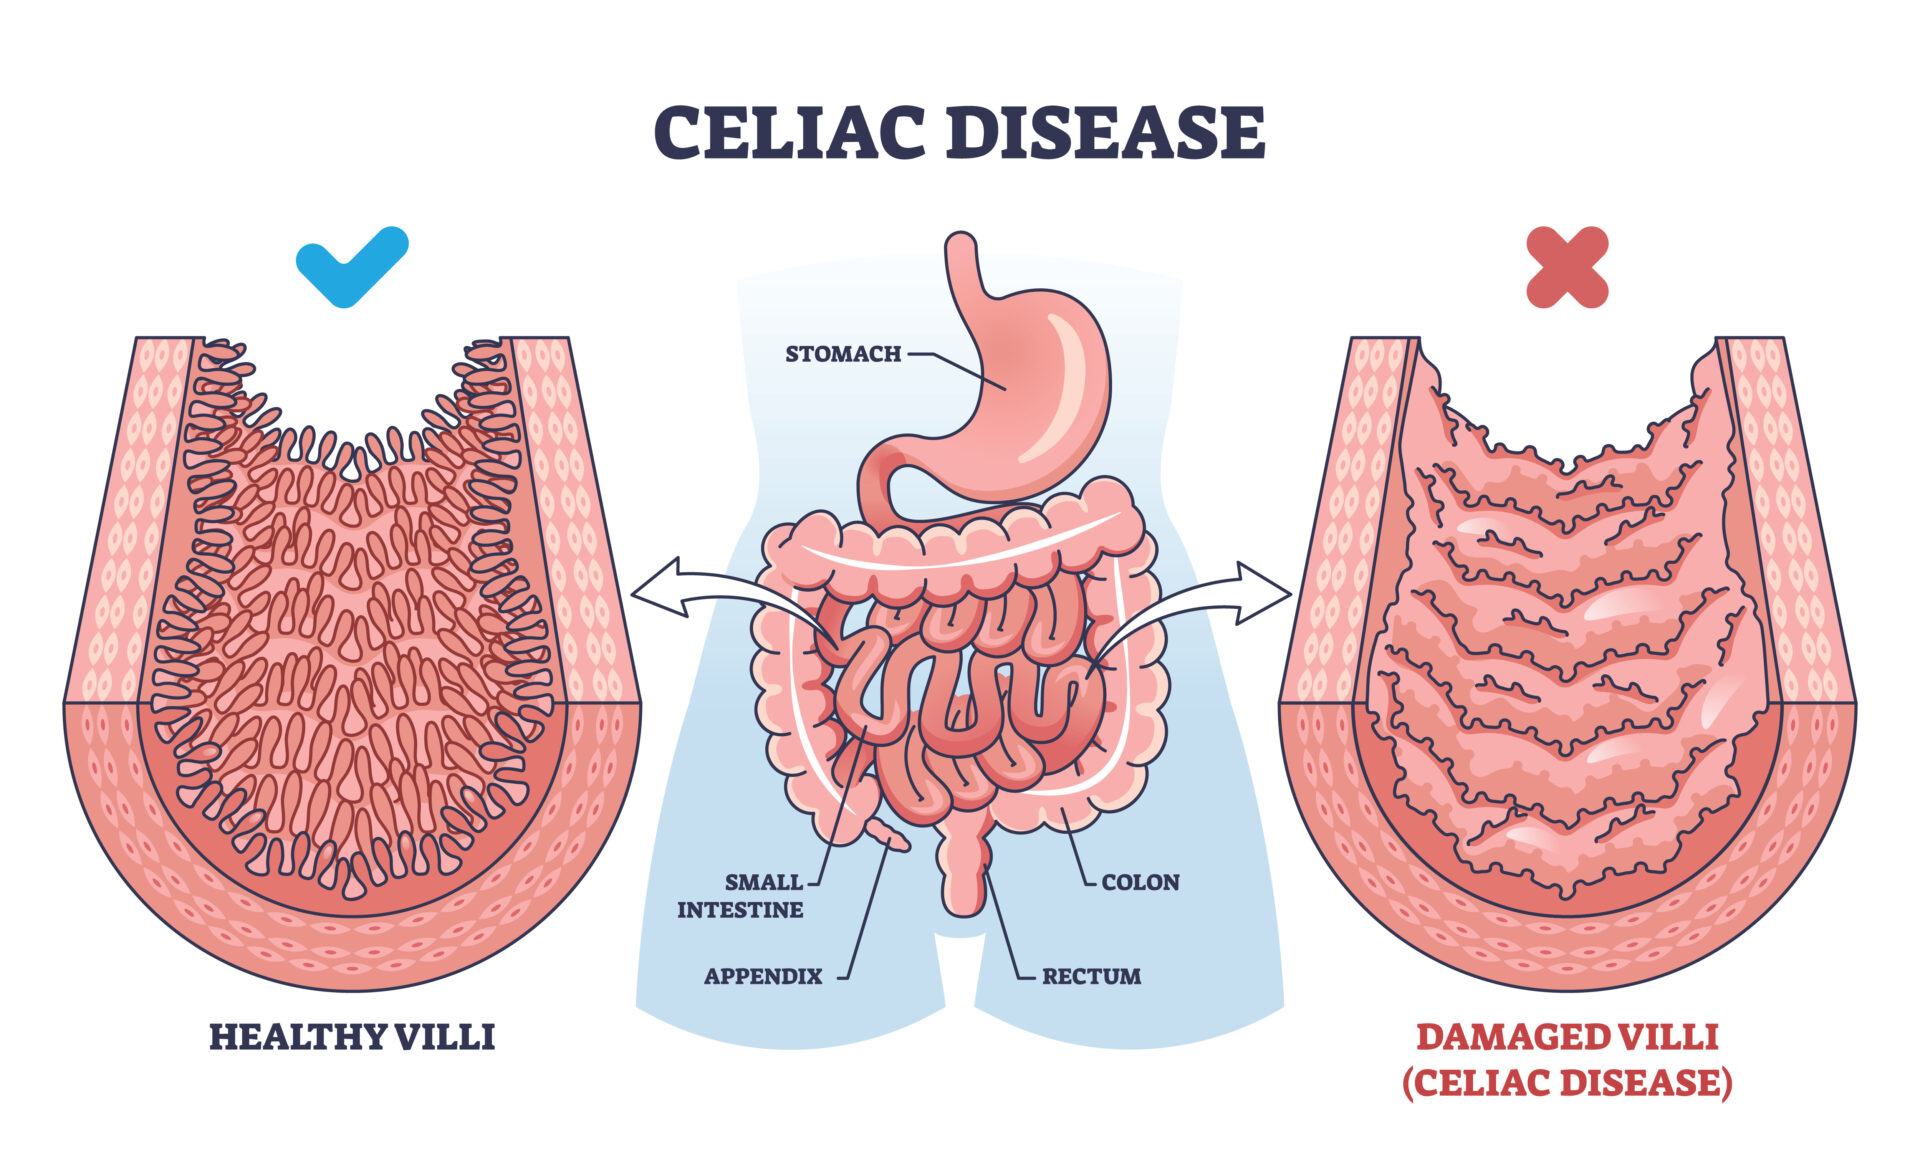 A imagem mostra uma ilustração onde é possível ver à esquerda um intestino delgado saudável com a seu revestimento livre de inflamações. Já na imagem à direita, vemos a representação de um intestino delgado de um paciente celíaco, com o seu revestimento inflamado e sem definições